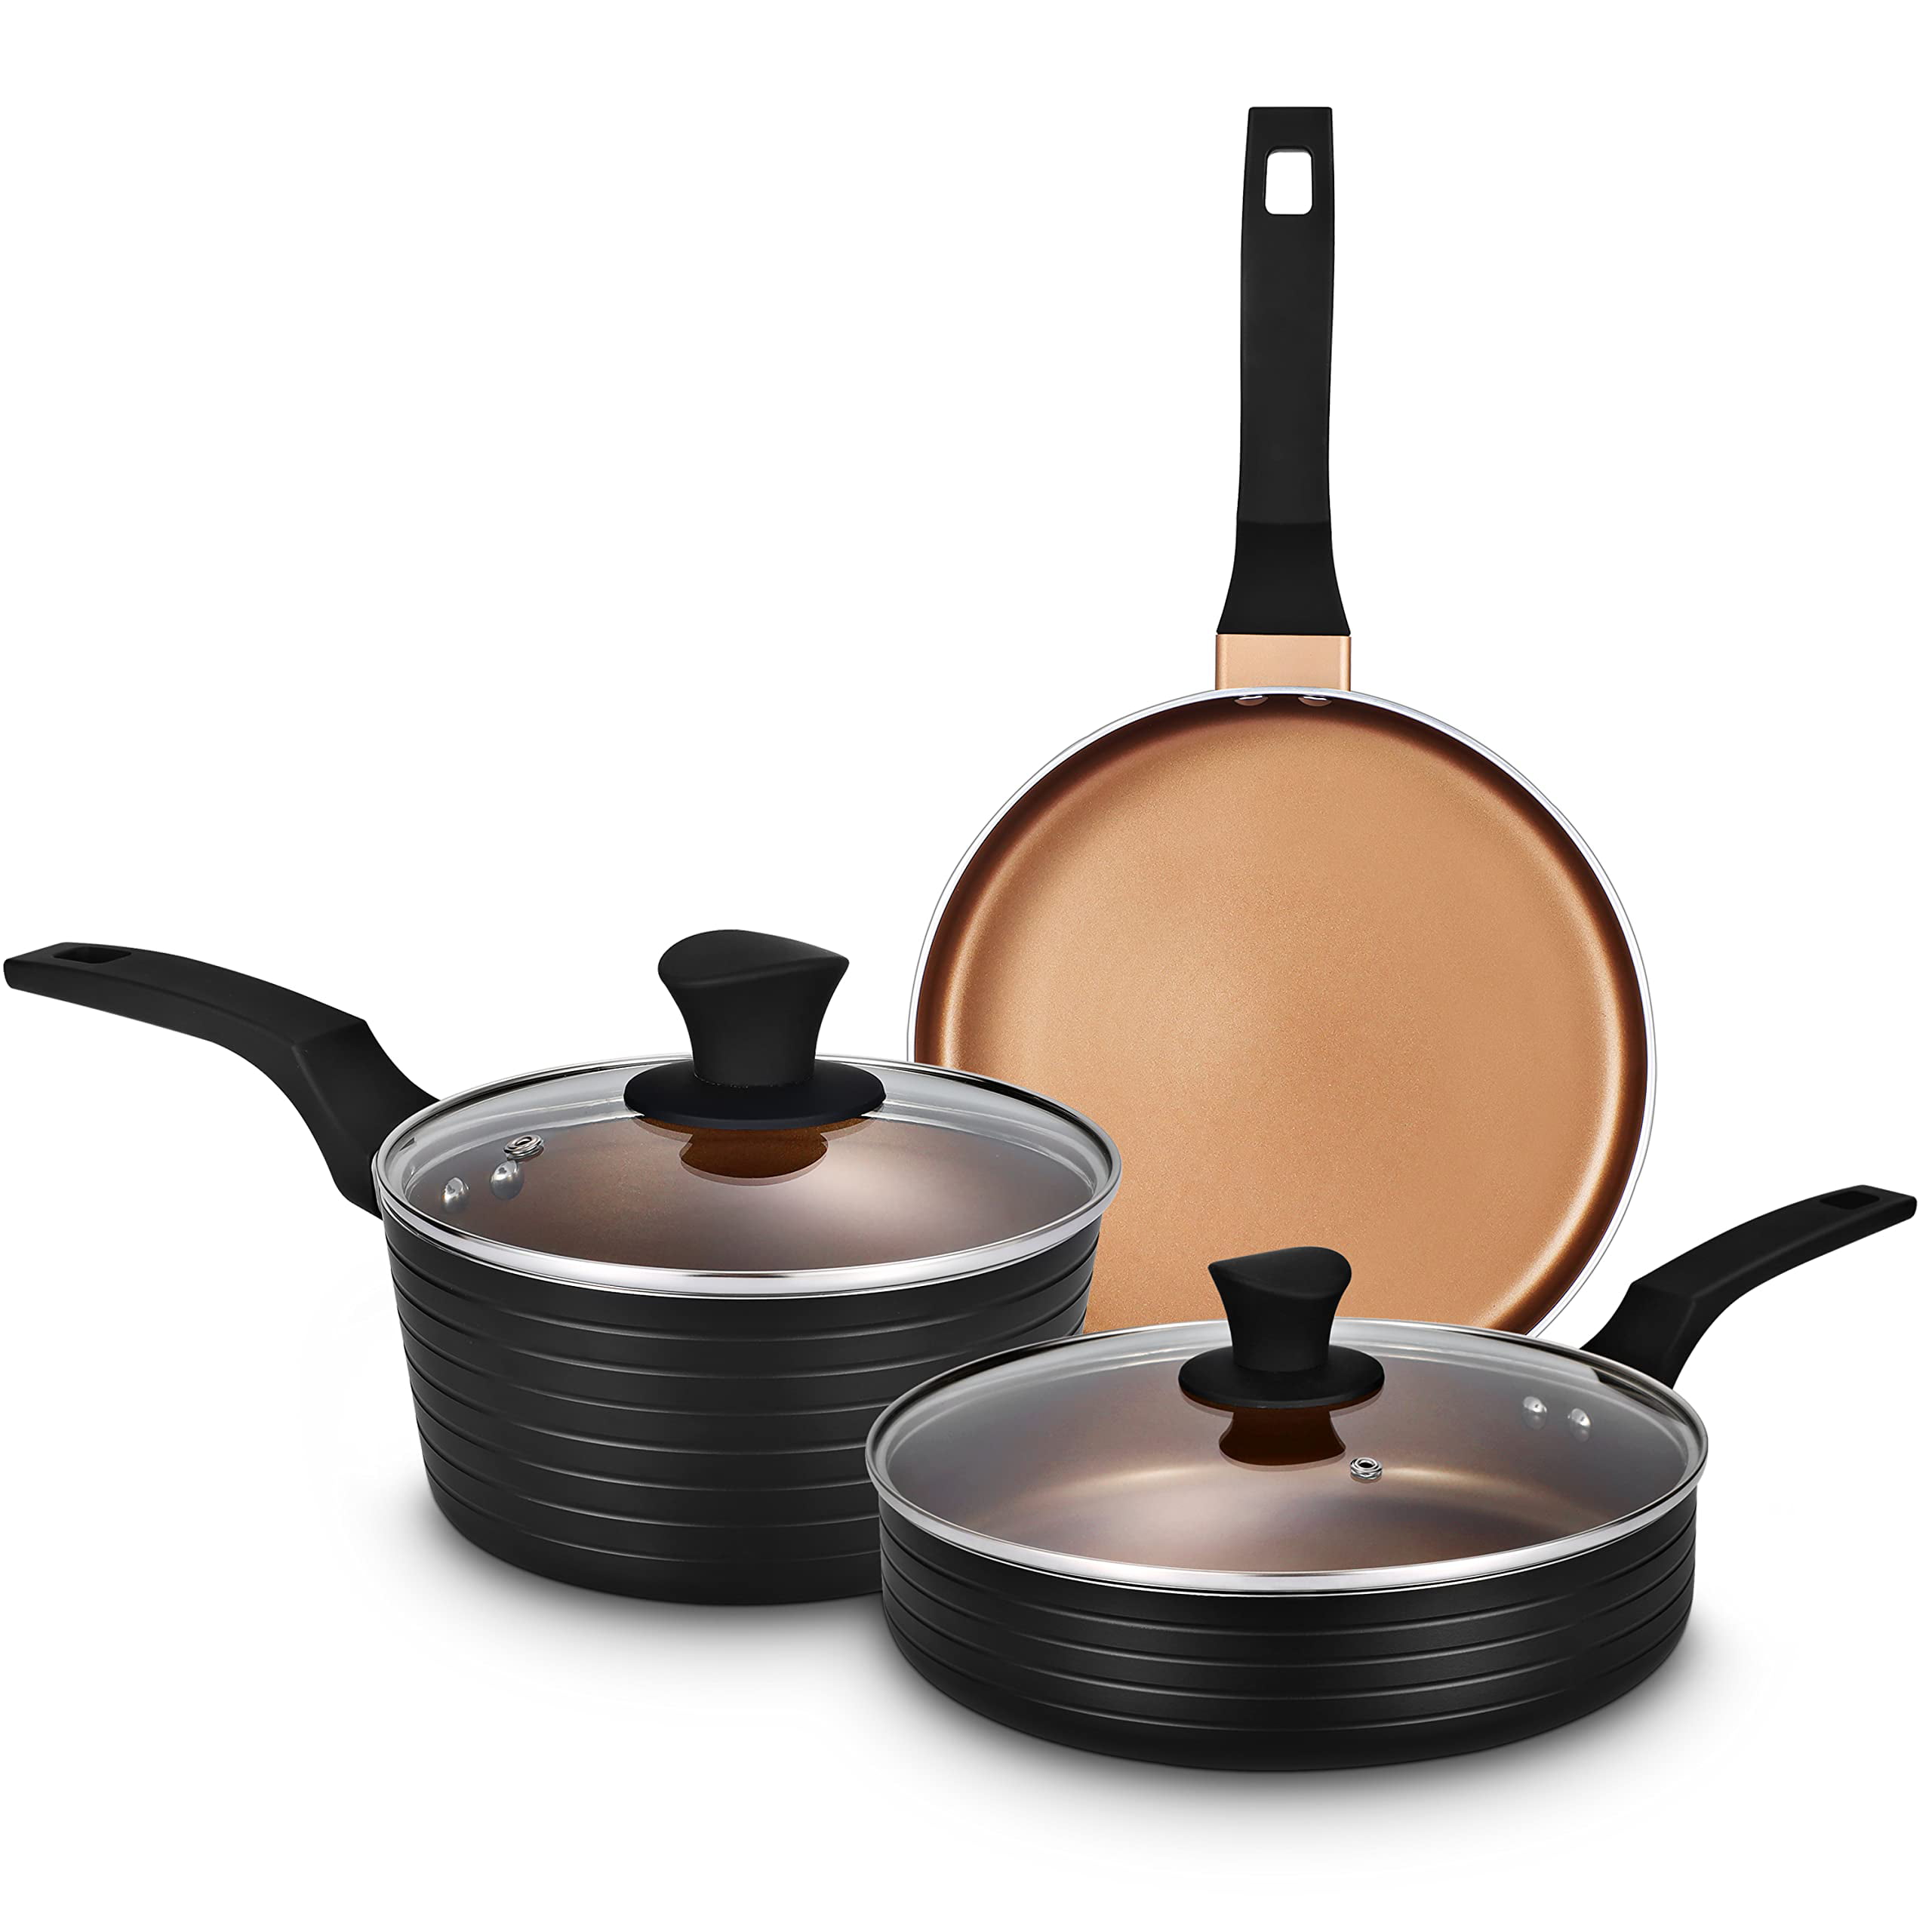 Sensarte Pots and Pans Set Nonstick with Detachable Handles, 14pcs